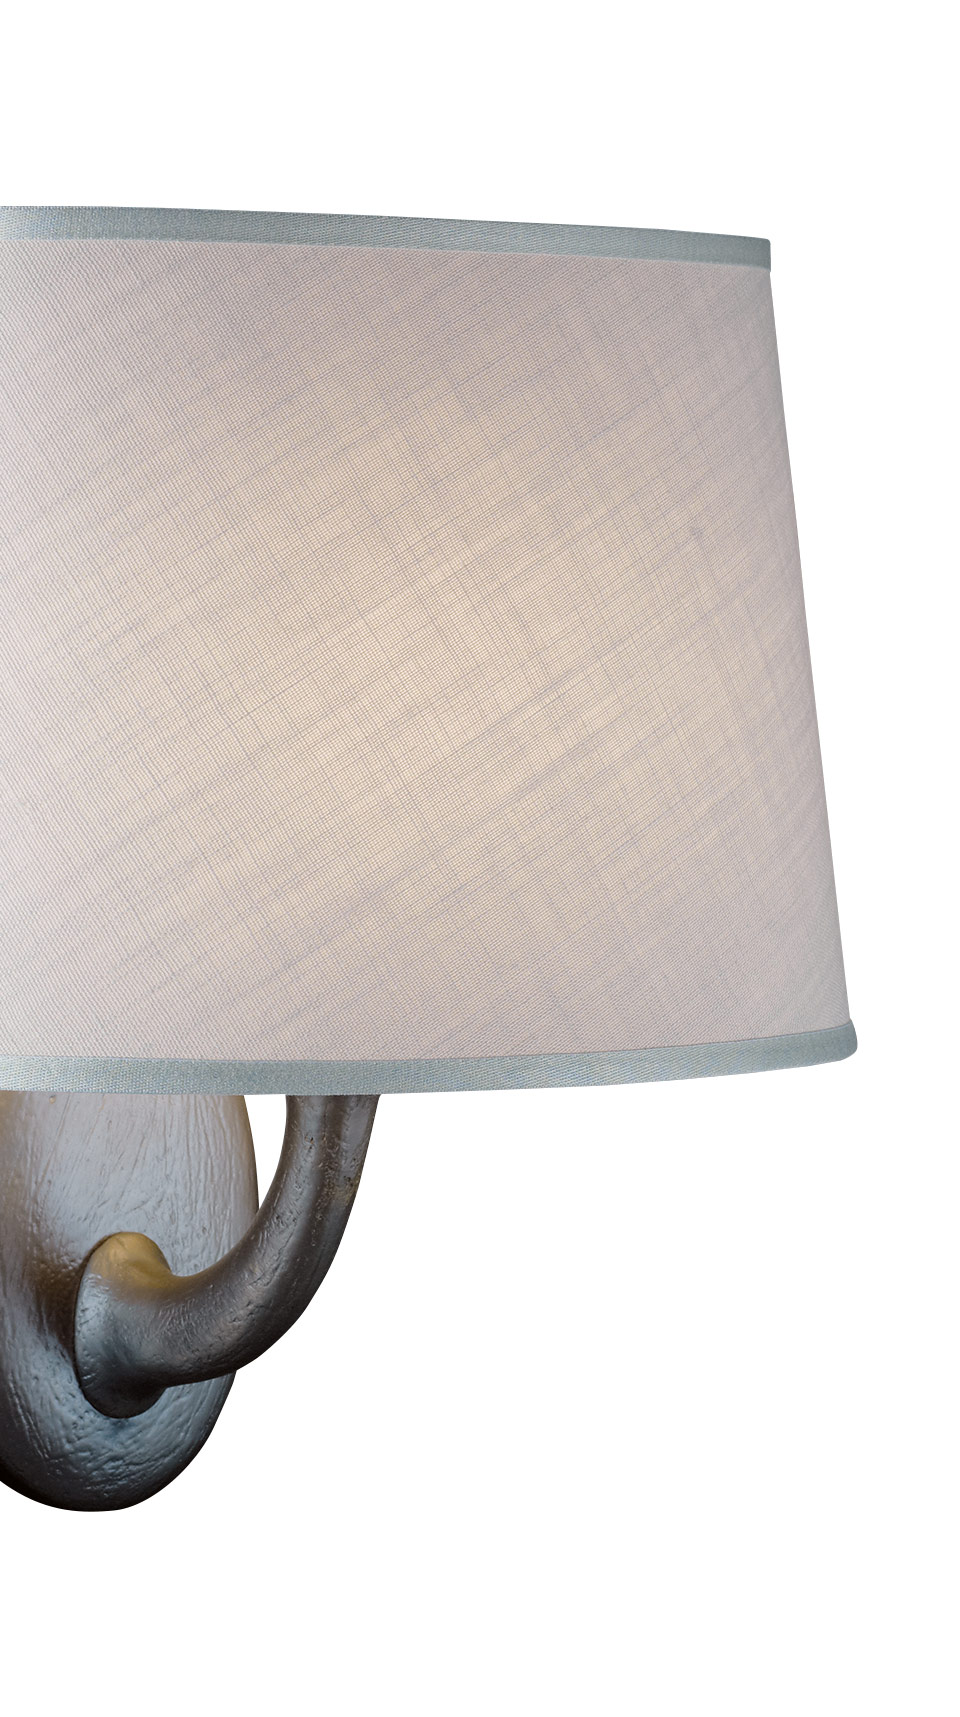 Françoise — настенная светодиодная лампа из бронзы, с абажуром изо льна, хлопка или шелка с ручной окантовкой из каталога Promemoria | Promemoria